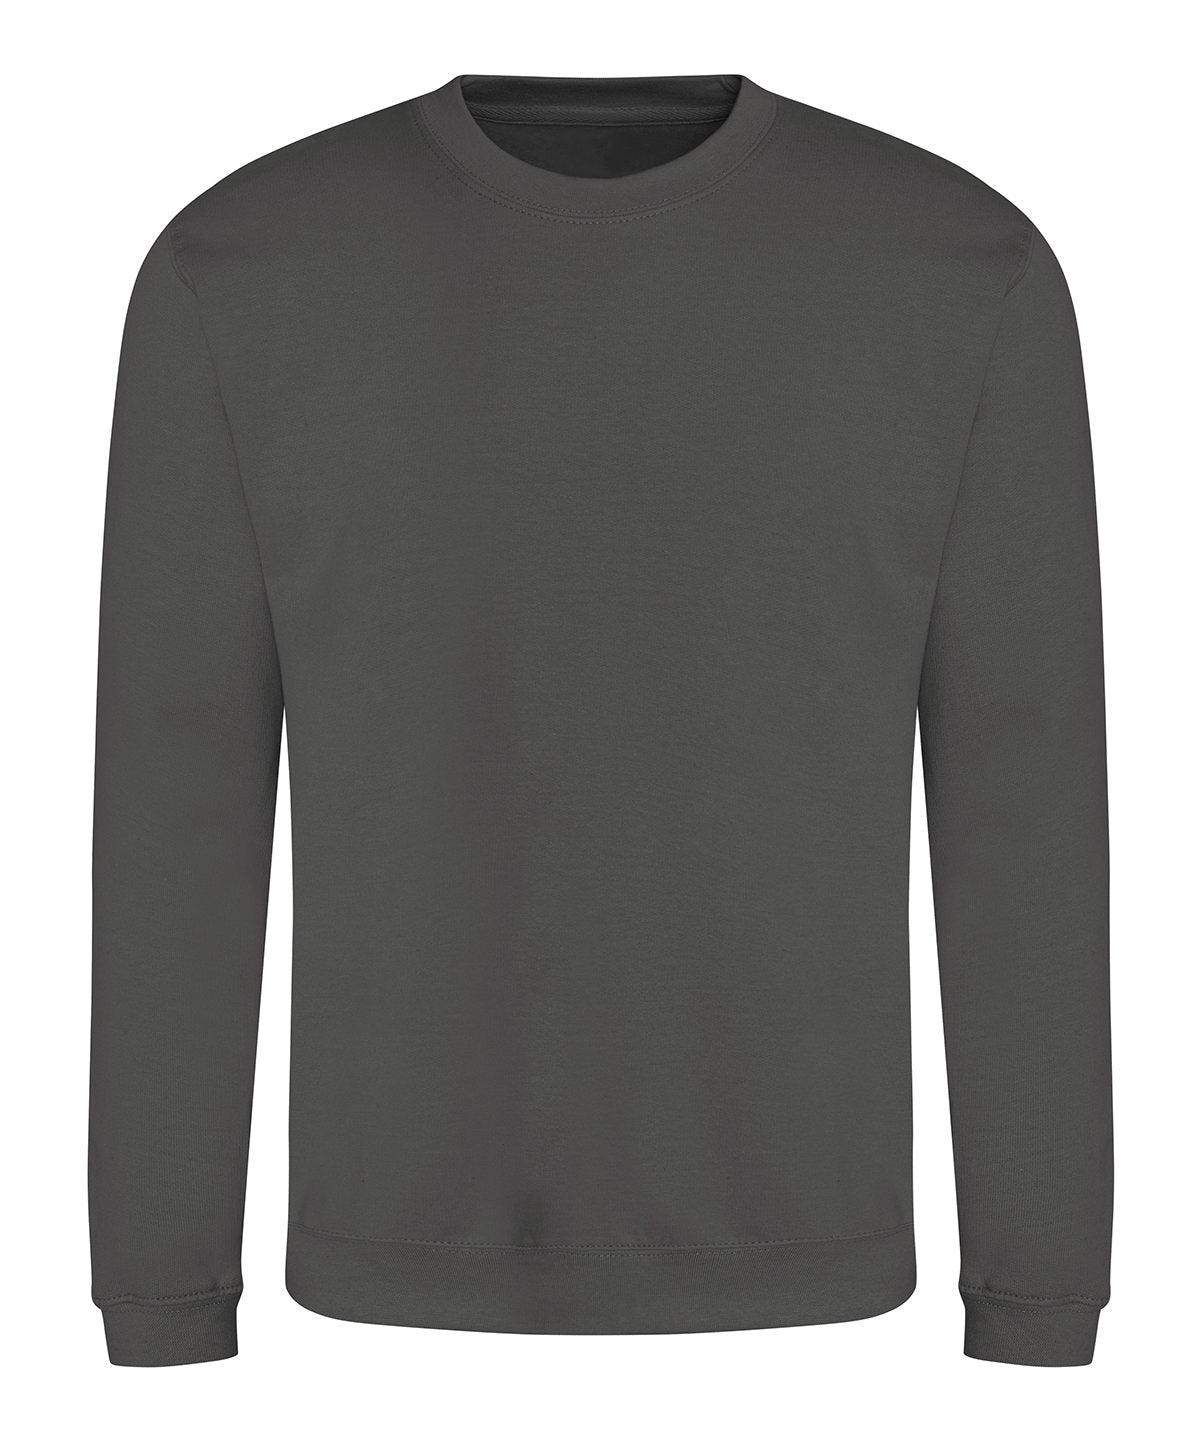 Personalised Sweatshirts - Turquoise AWDis Just Hoods AWDis sweatshirt